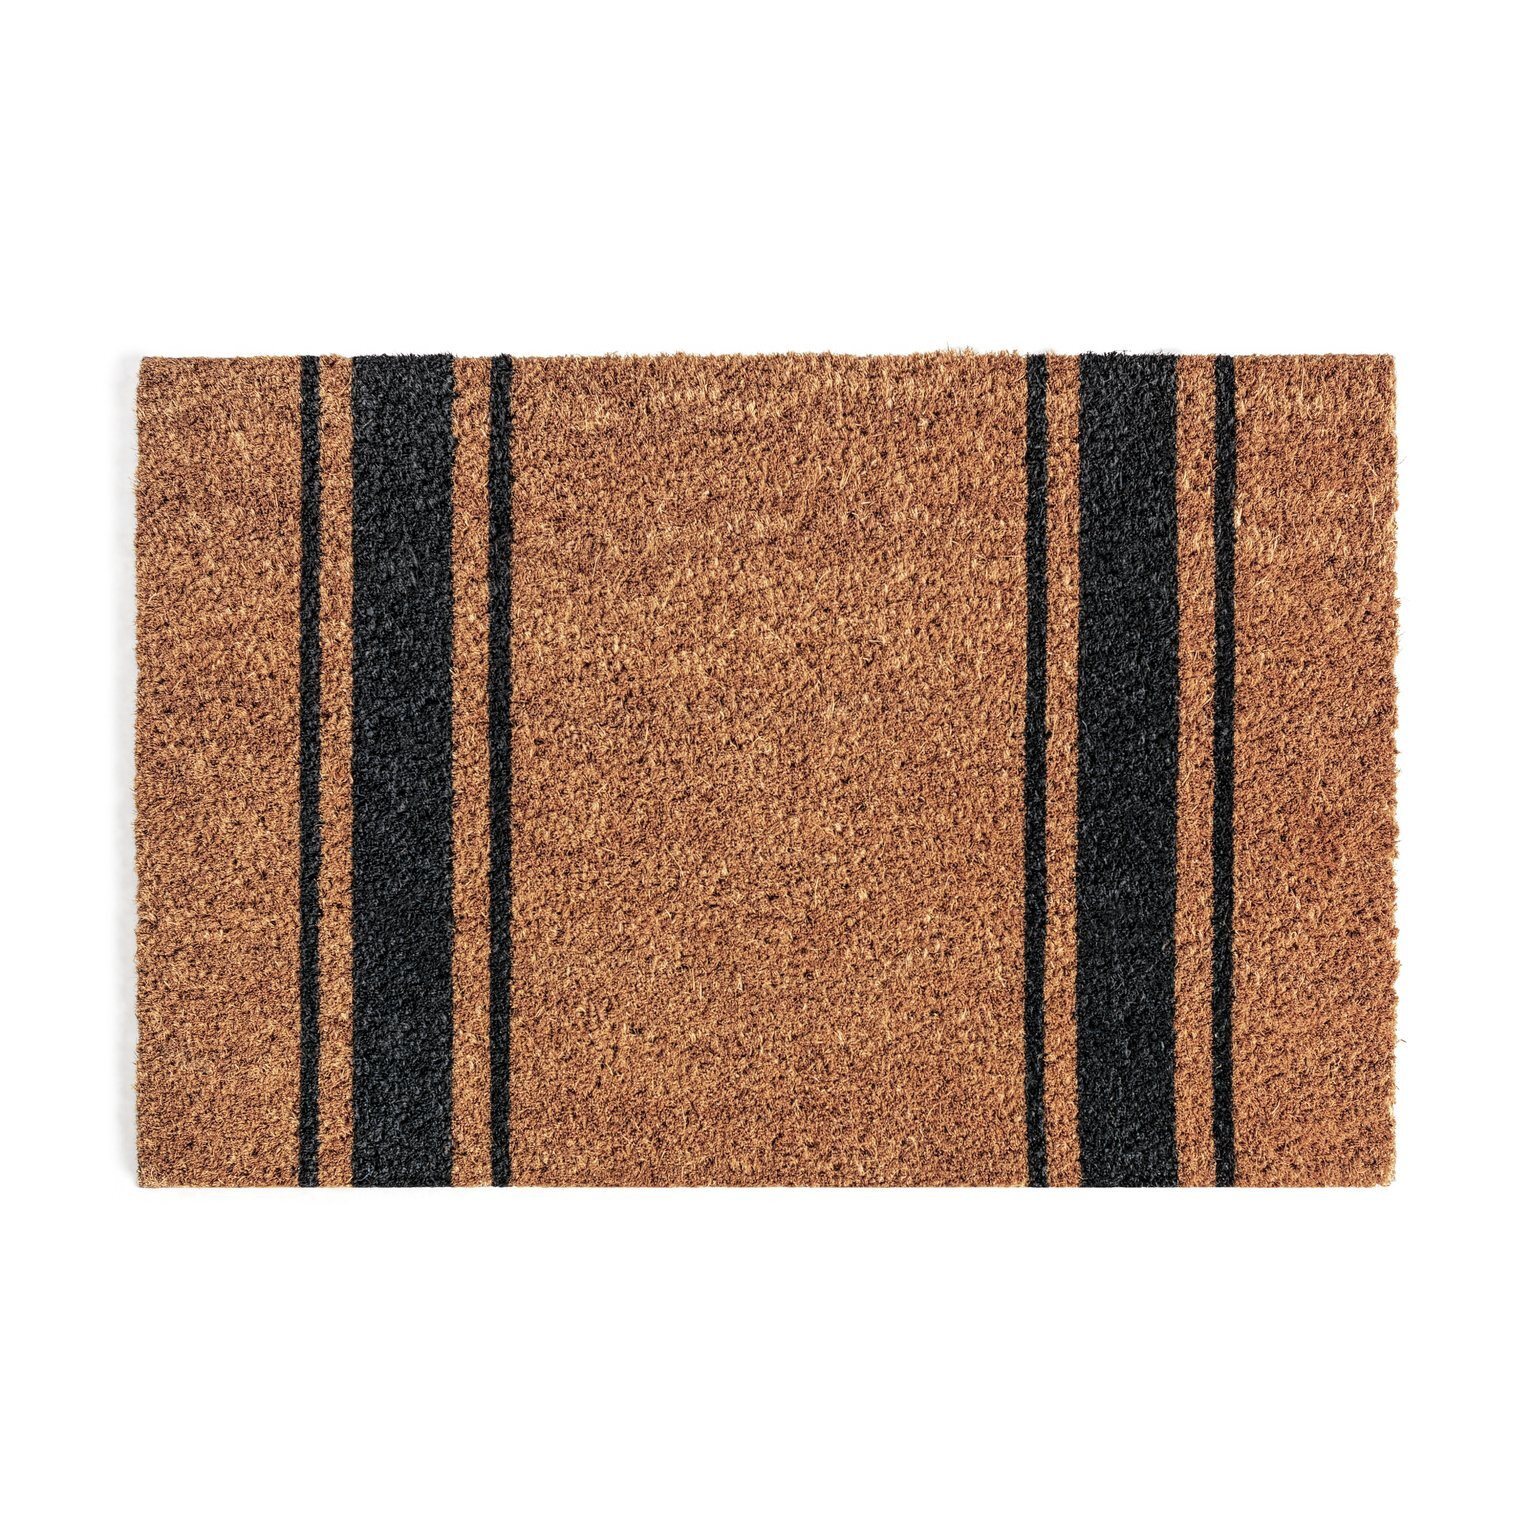 Habitat Stripe Coir Doormat - Black & Brown